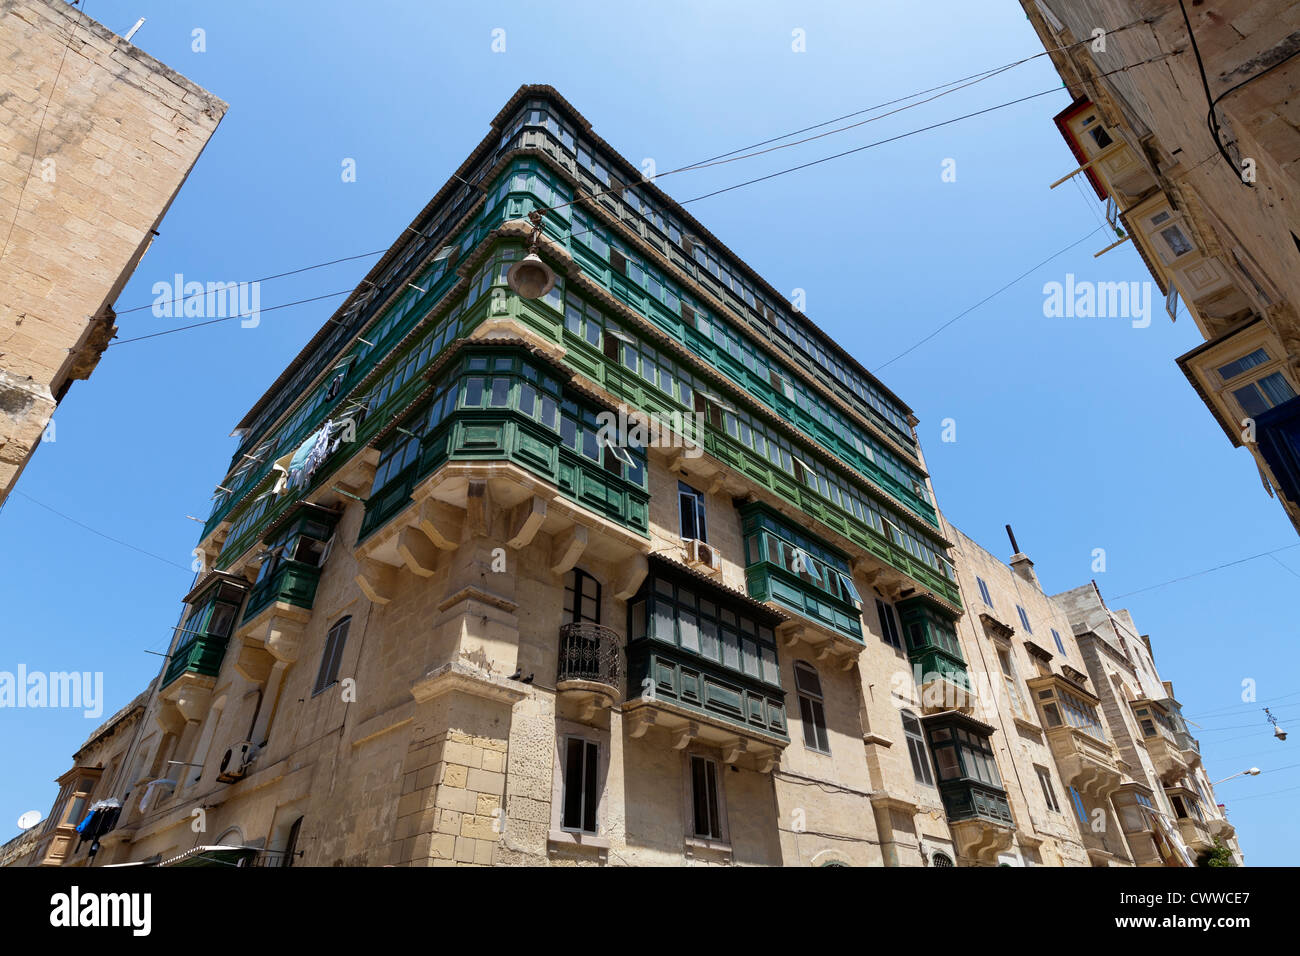 Arquitectura maltesa visto en las calles de la isla de Malta, el Mar Mediterráneo Foto de stock